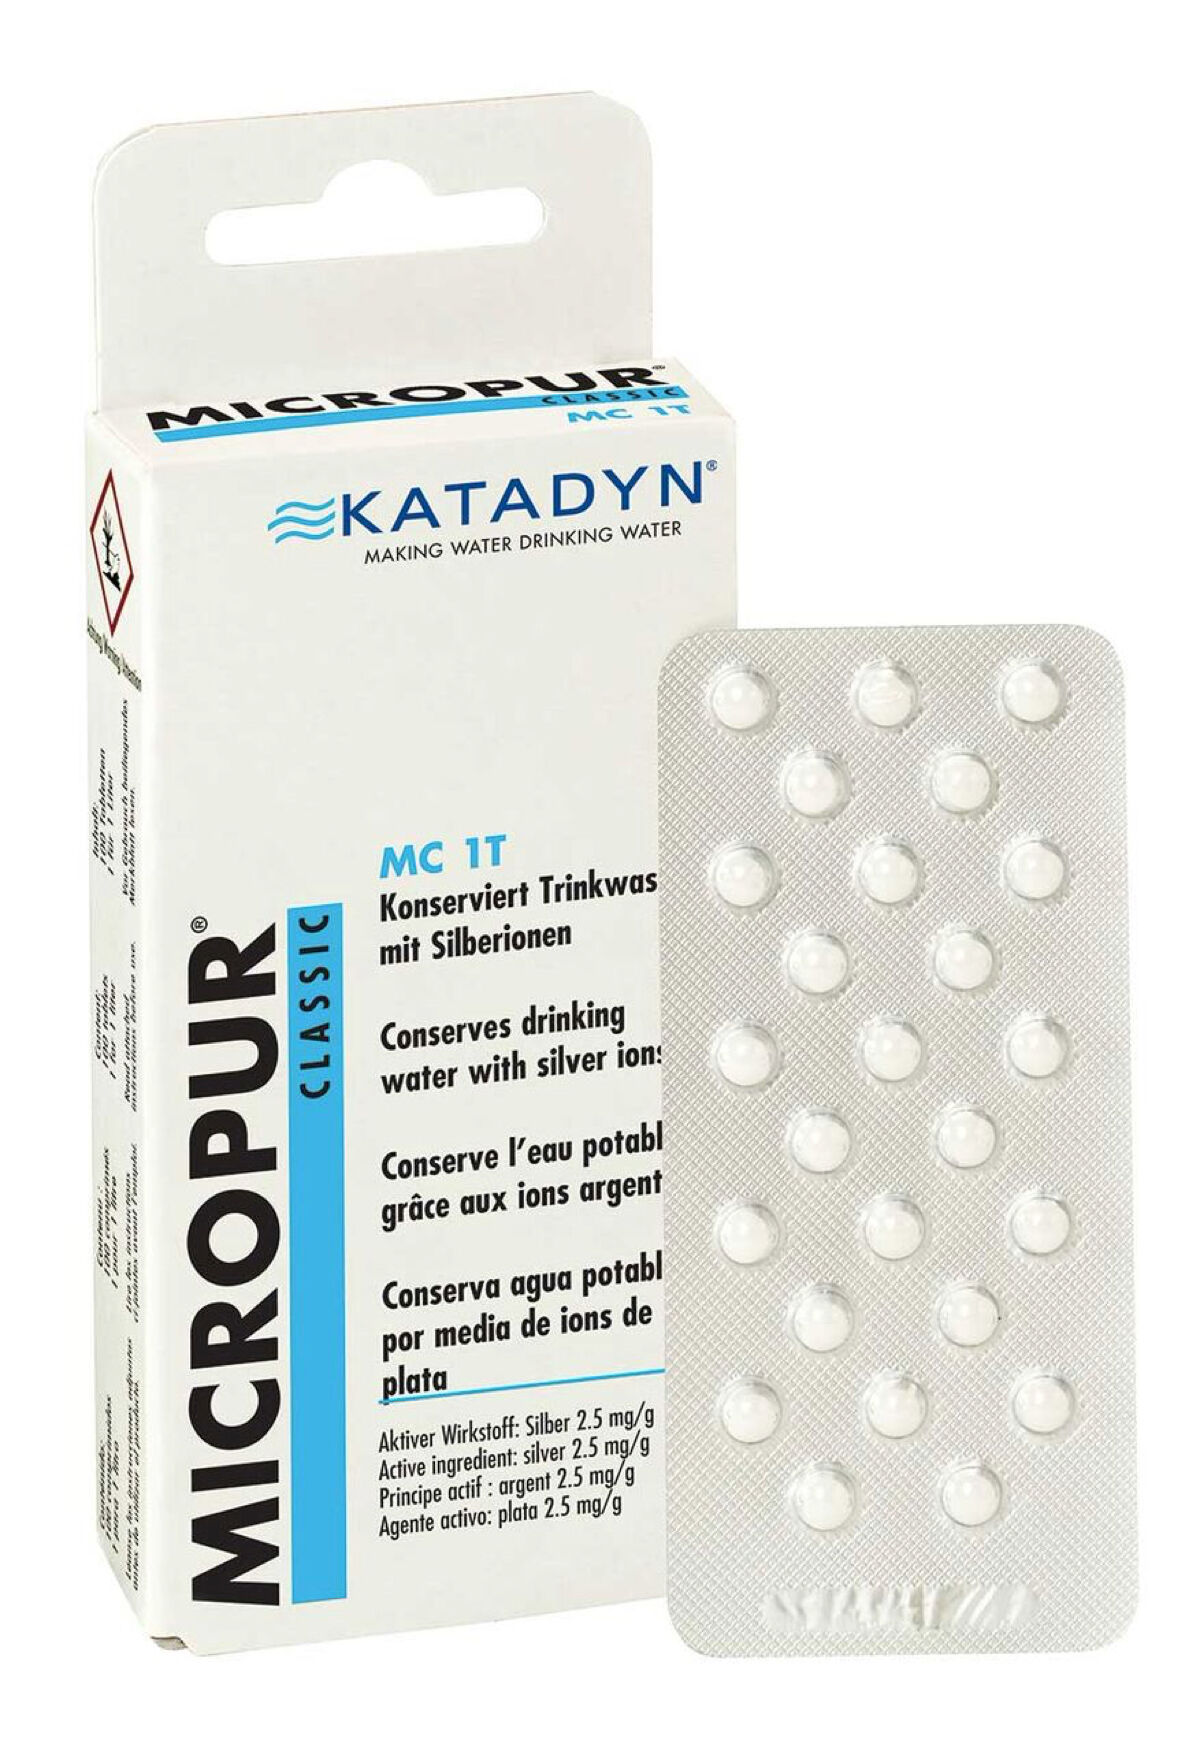 Katadyn - Micropur Classic MC 1T - Disinfezione acqua